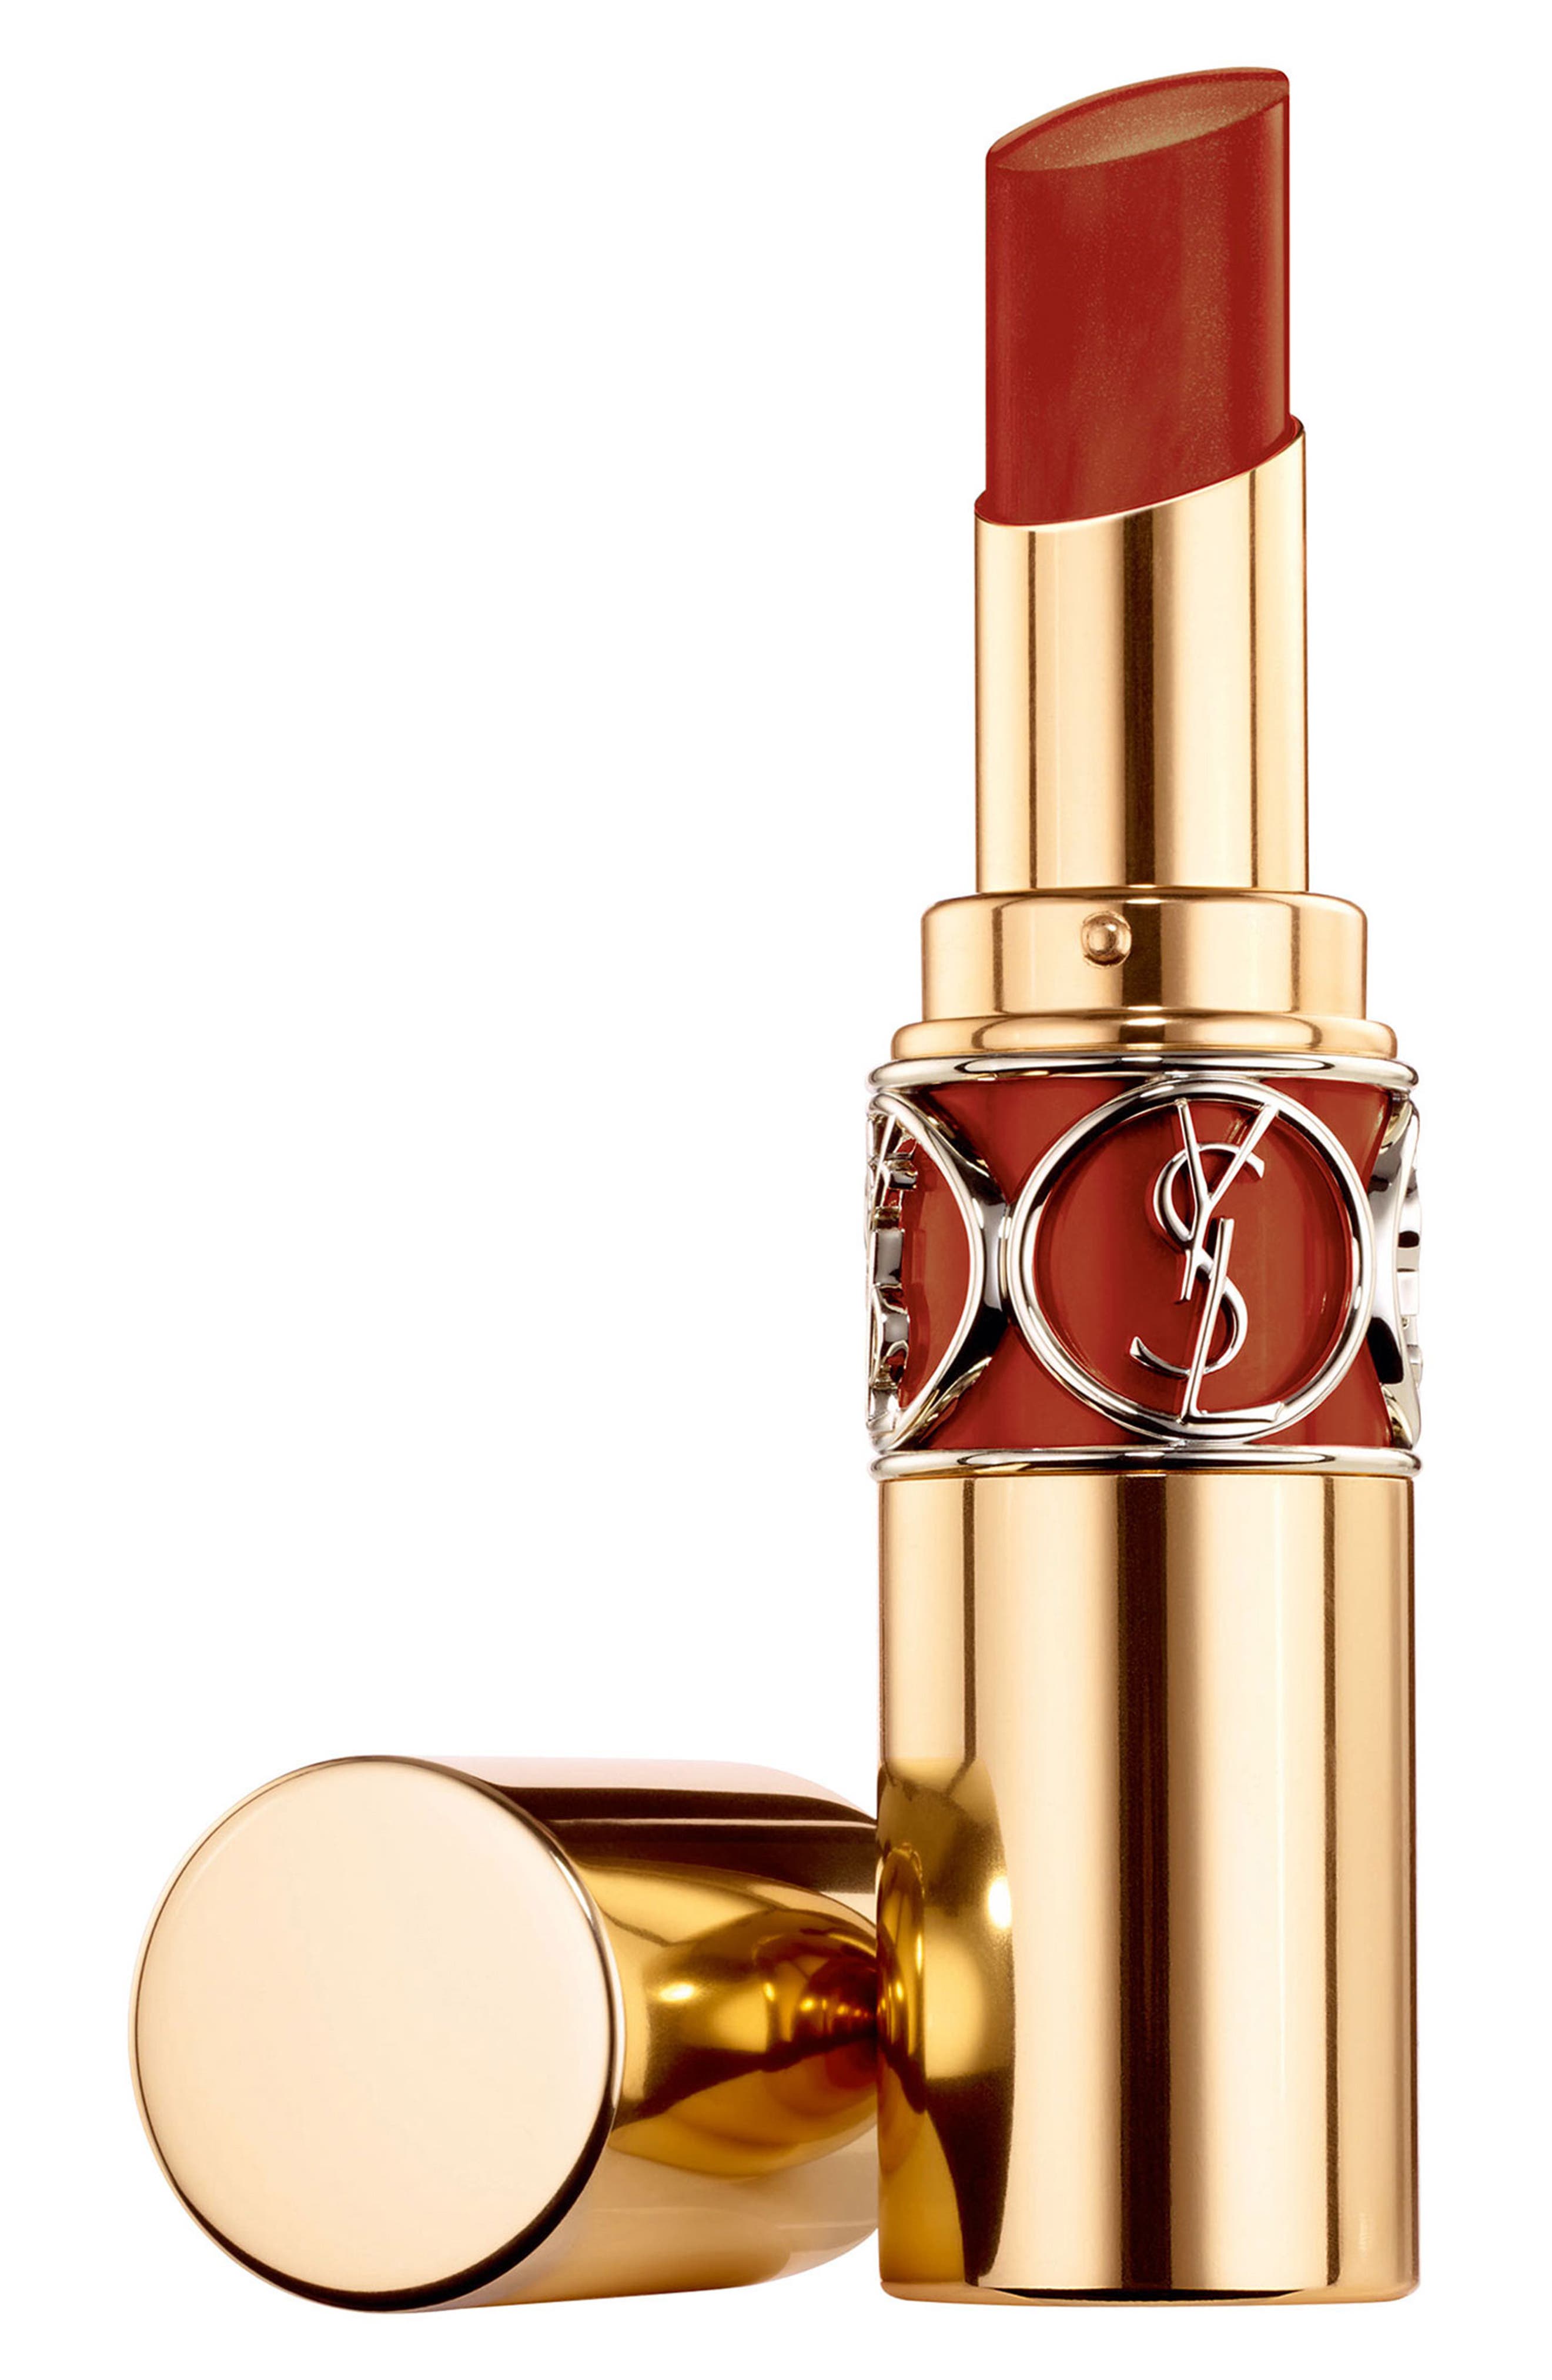 Yves Saint Laurent Rouge Volupte Shine Oil-in-Stick Lipstick Balm in 80 Chili Tunique